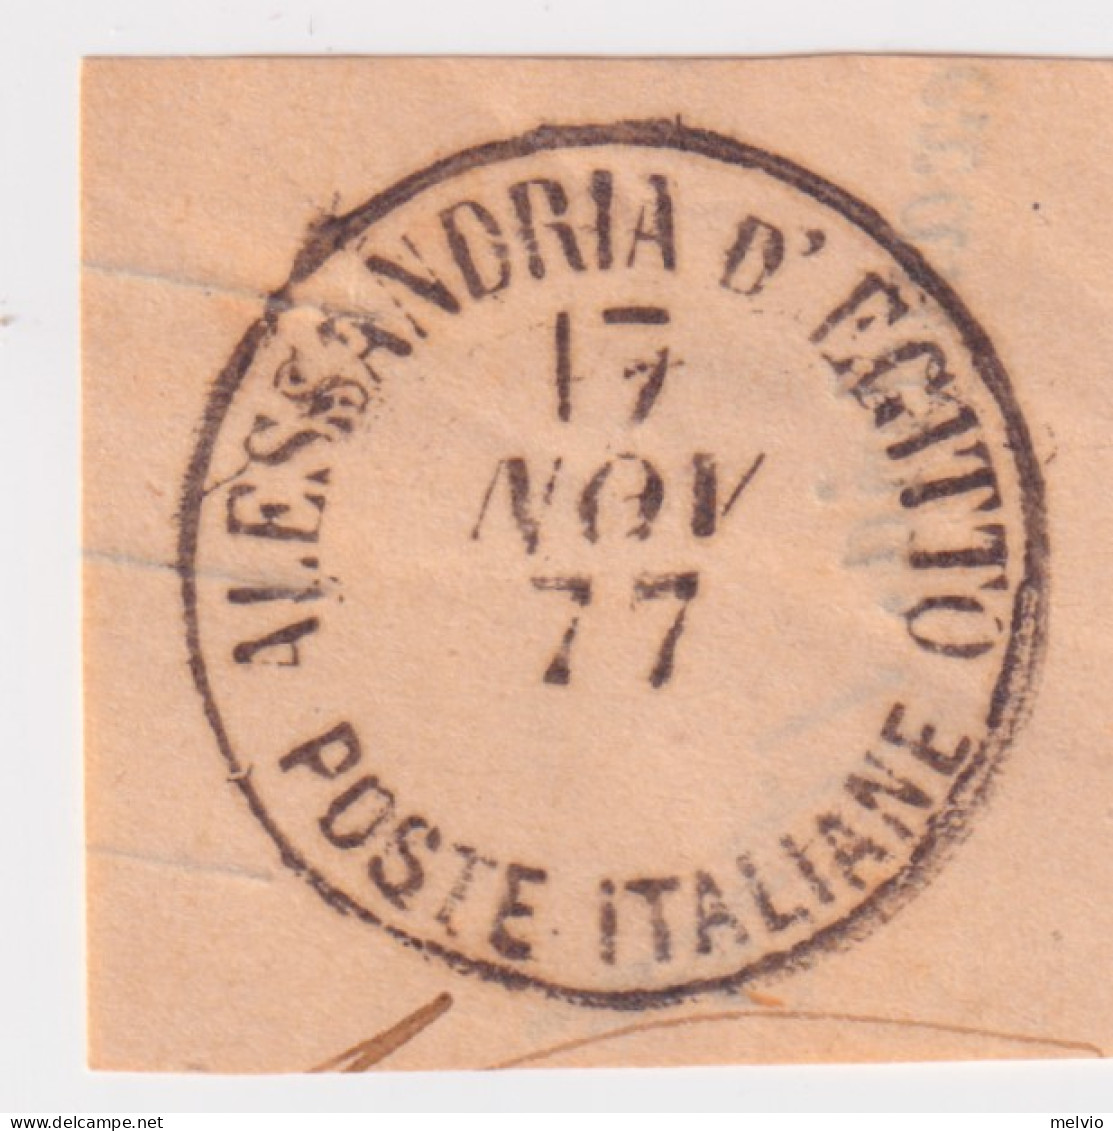 1877-Levante (O=used) C1 Completo Di Alessandria D'Egitto Del 17.11 Su Frammento - Vignetten (Erinnophilie)